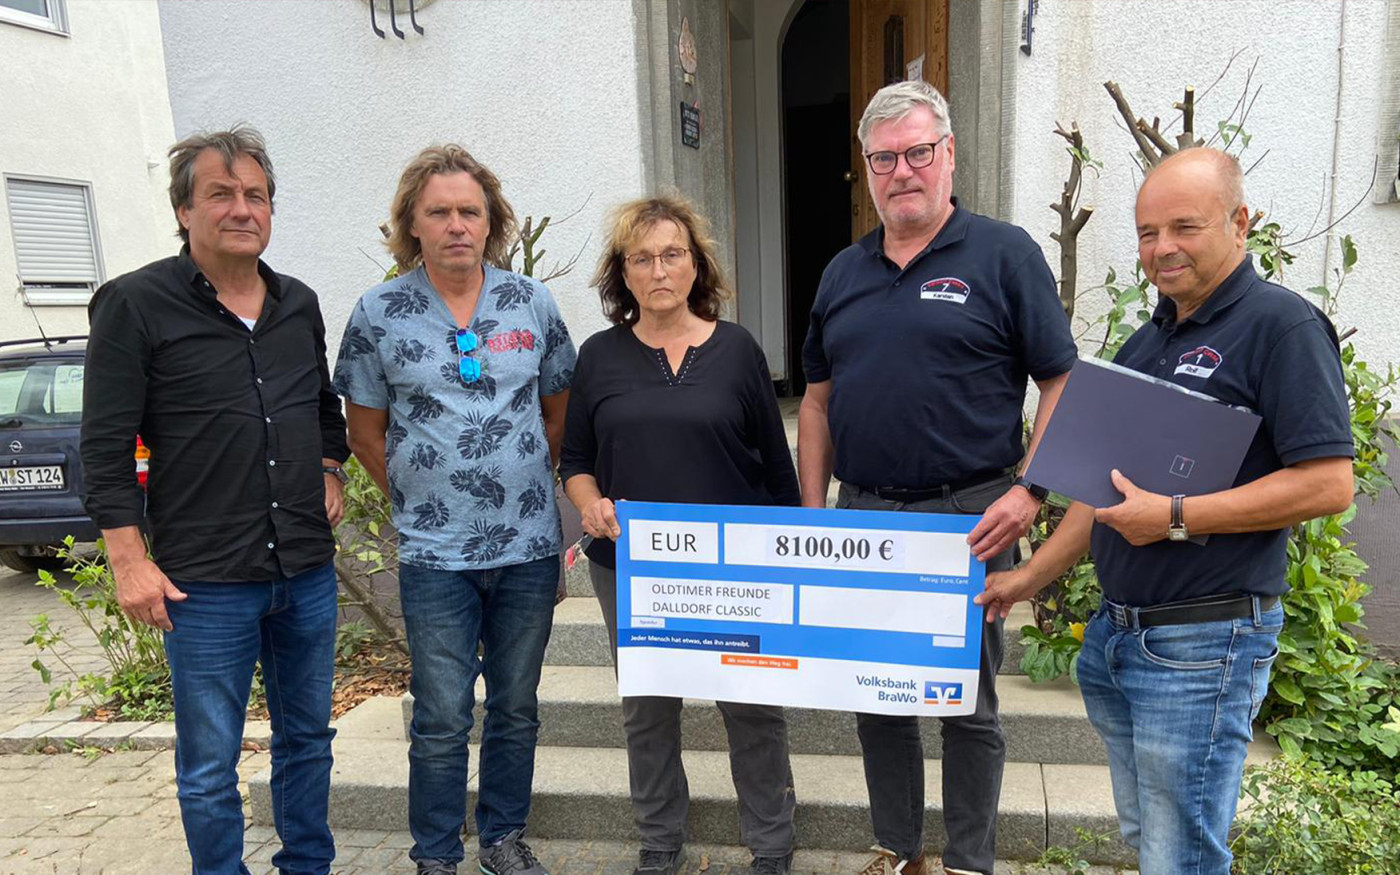 Oldtimer-Freunde Dalldorf Classic und MFC Salzgitter überbringen 11.100-Euro-Spende in Hochwasser-Katastrophengebiet